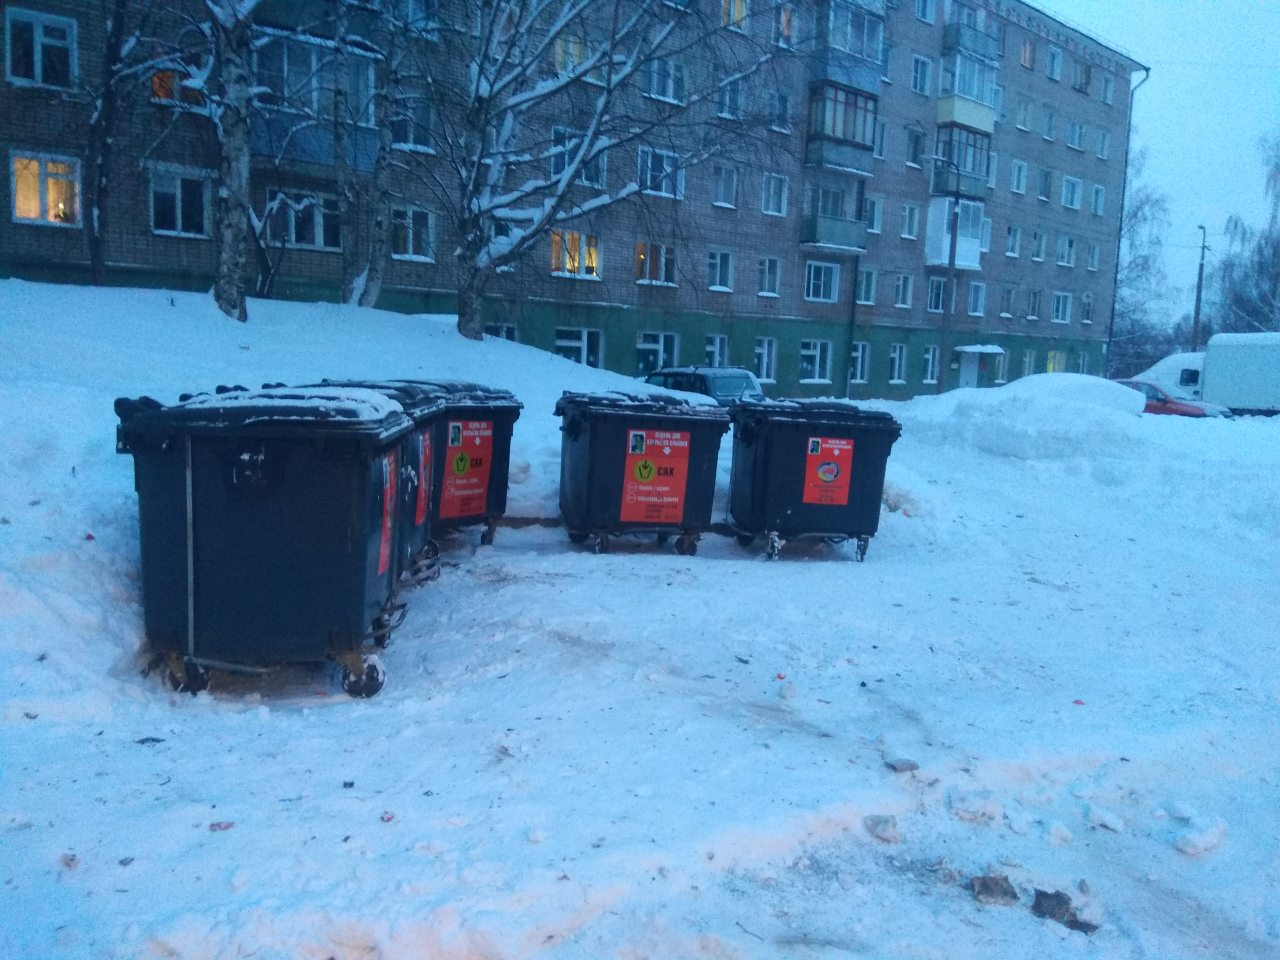 Новые мусорные контейнеры в Кирове жгут, воруют и ломают